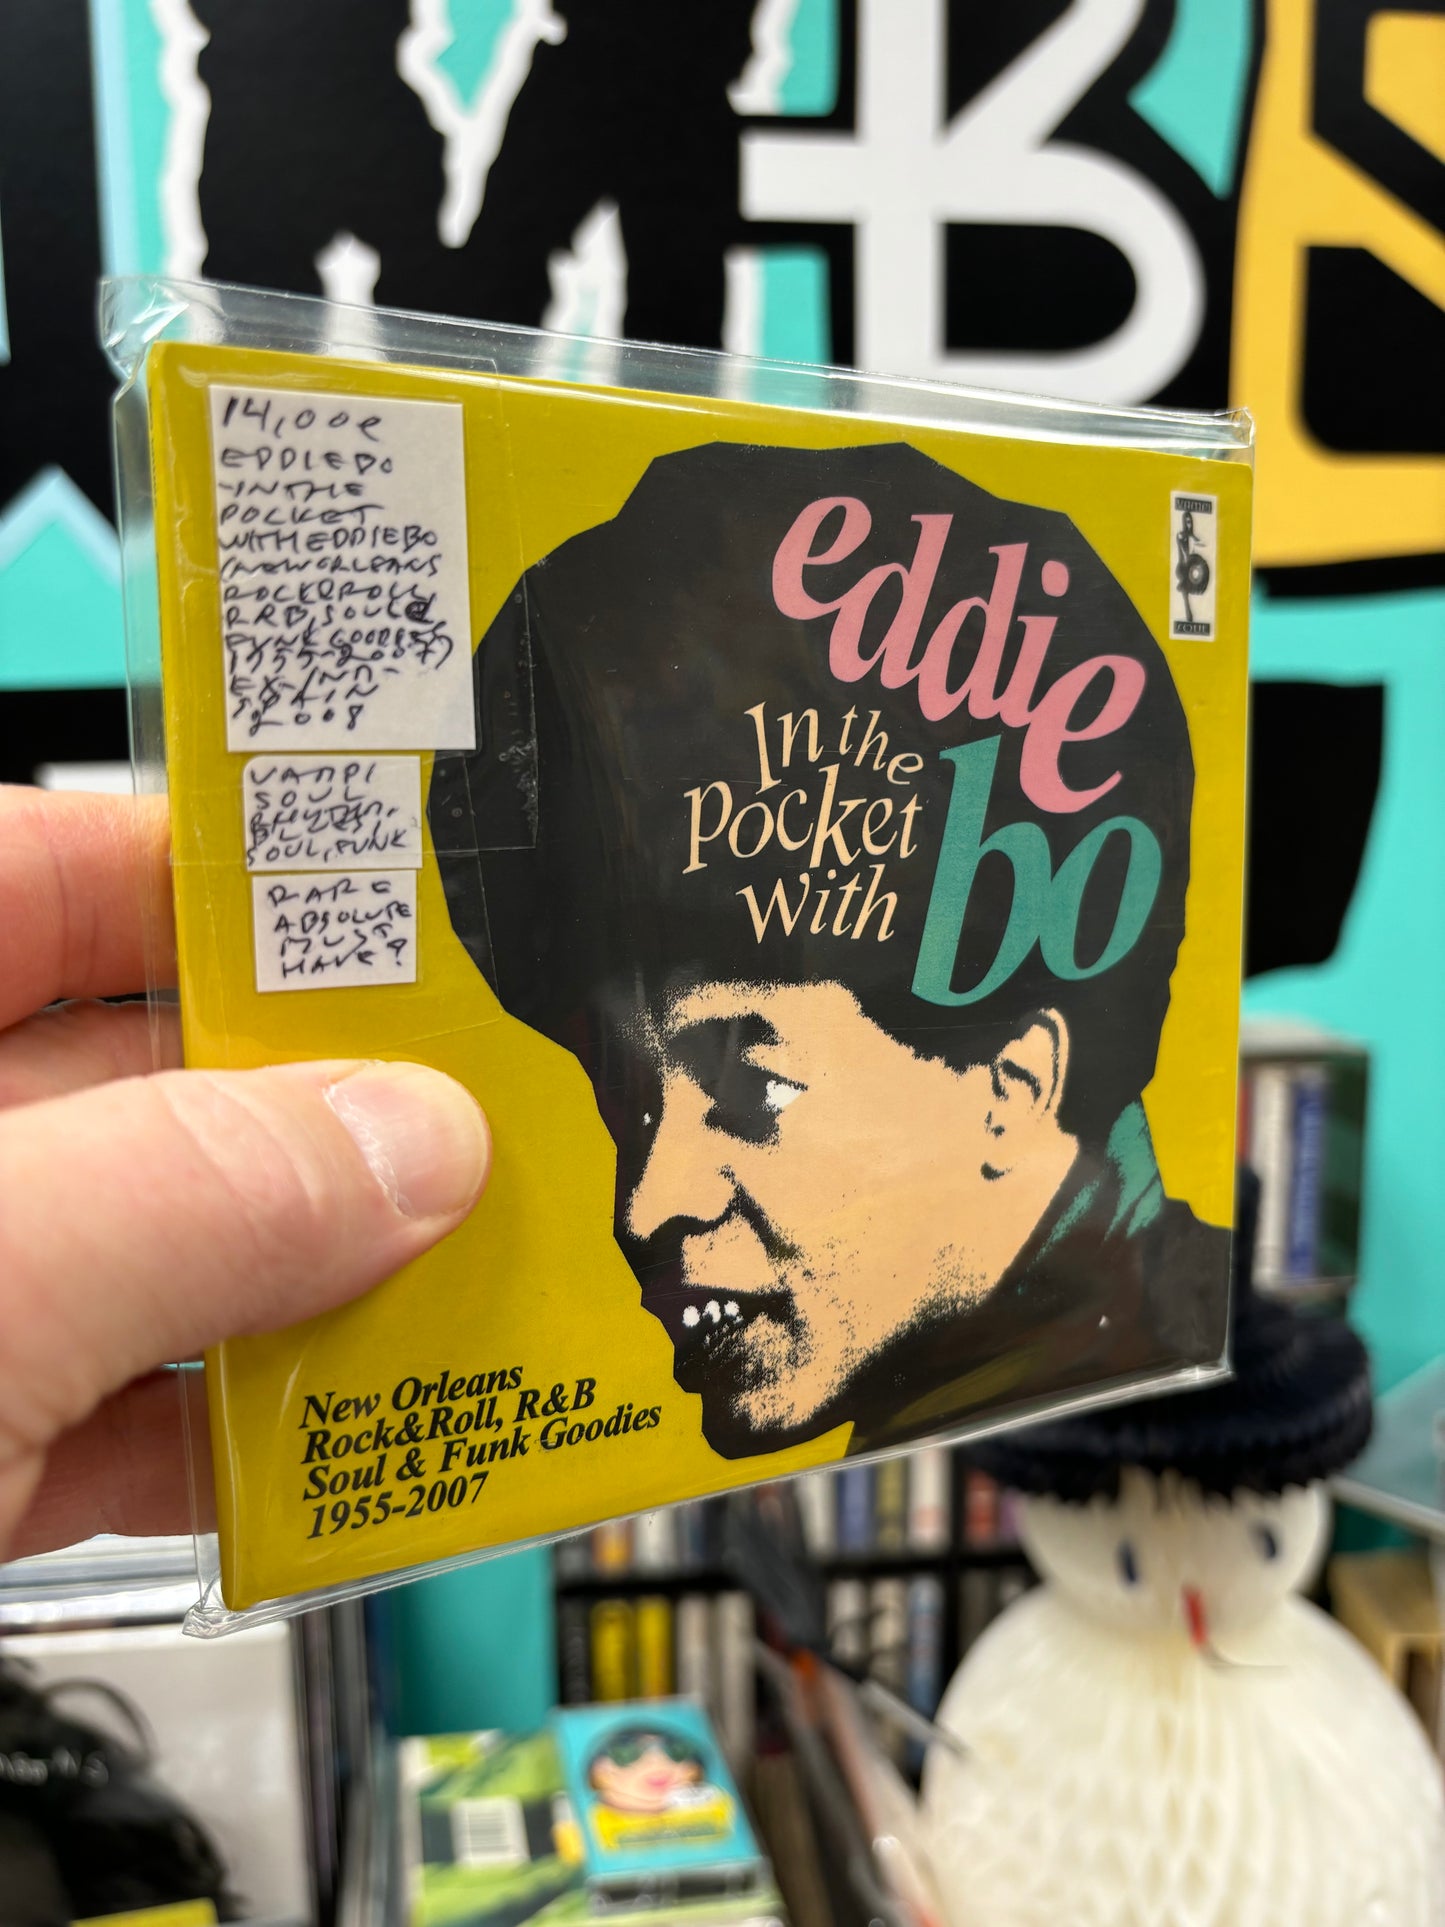 Eddie Bo - In The Pocket With Eddie Bo (New Orleans Rock & Roll, R&B, Soul & Funk Goodies 1955-2007), CD, Spain 2008